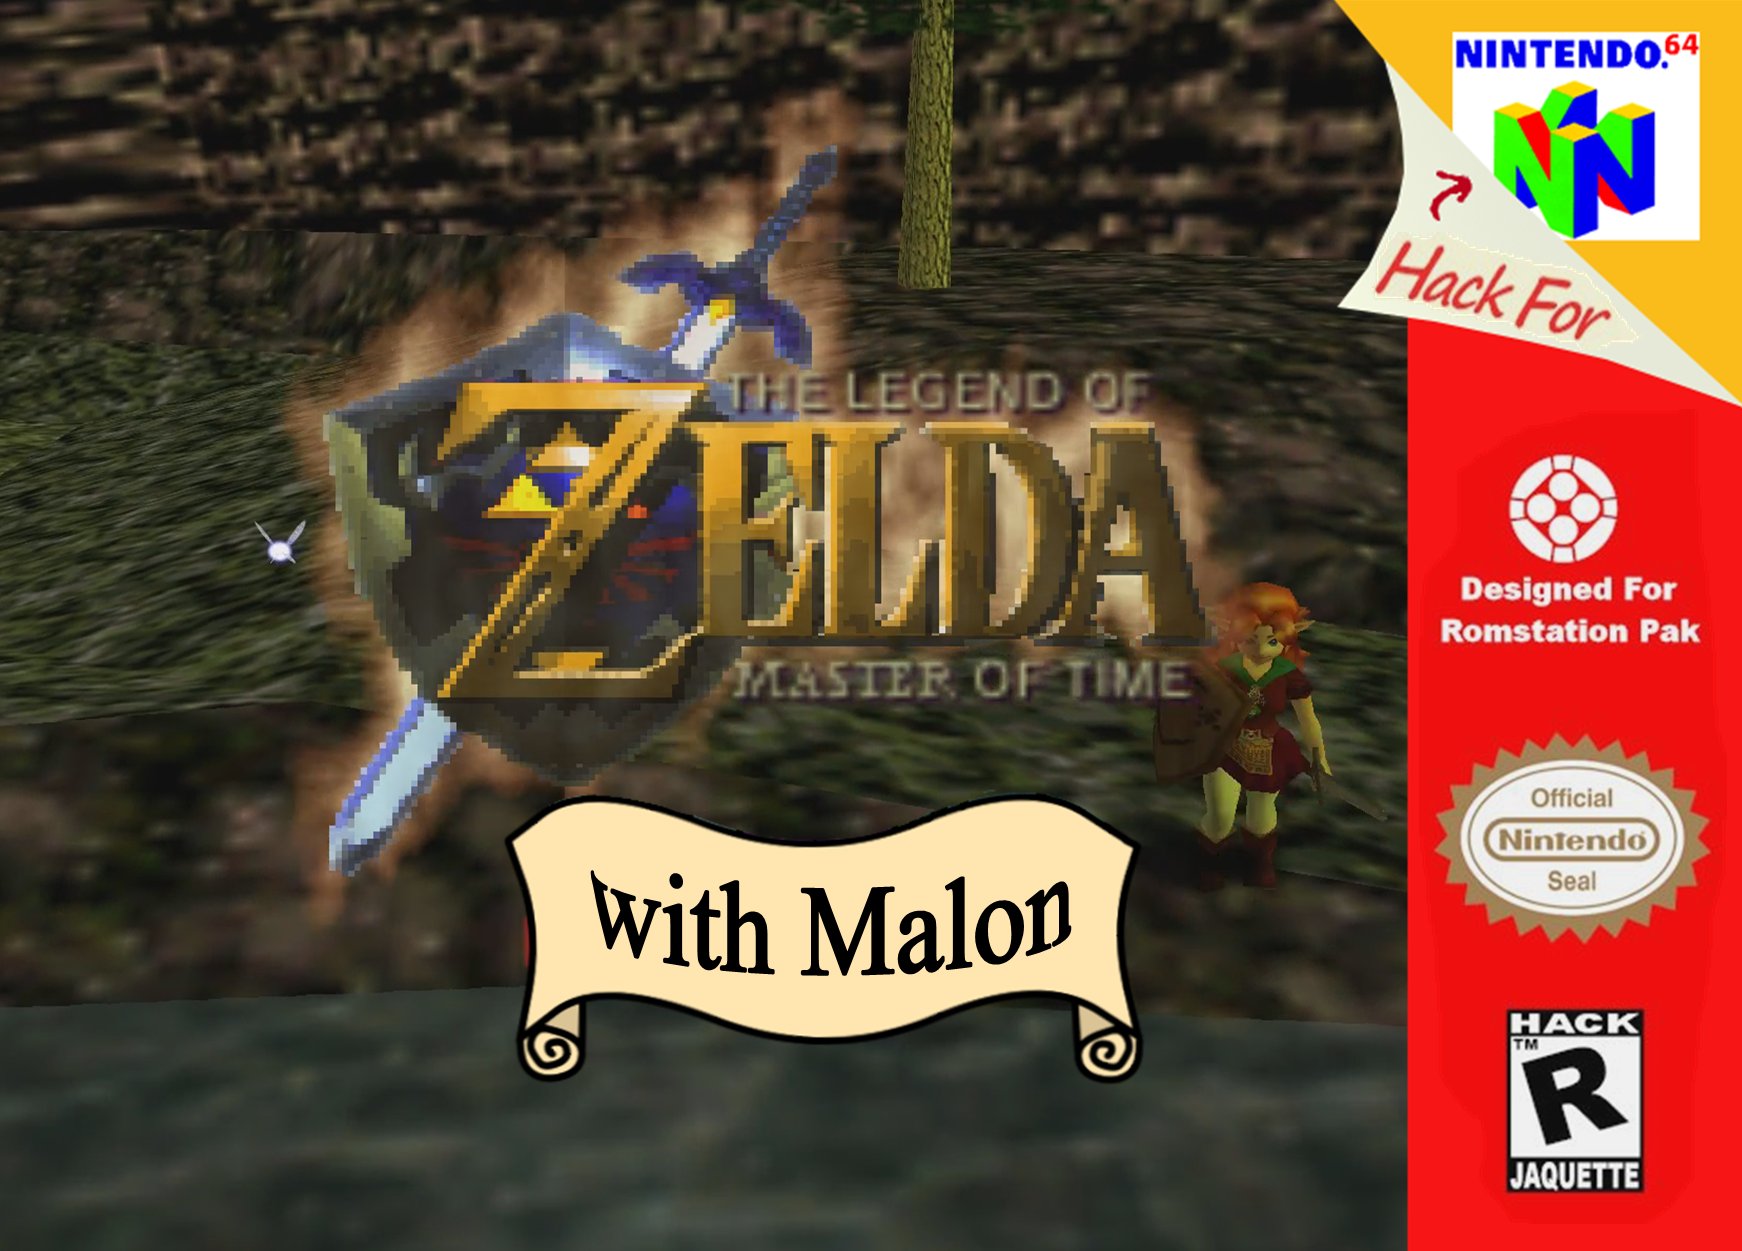 Malon & The Legend of Zelda: Master of Time